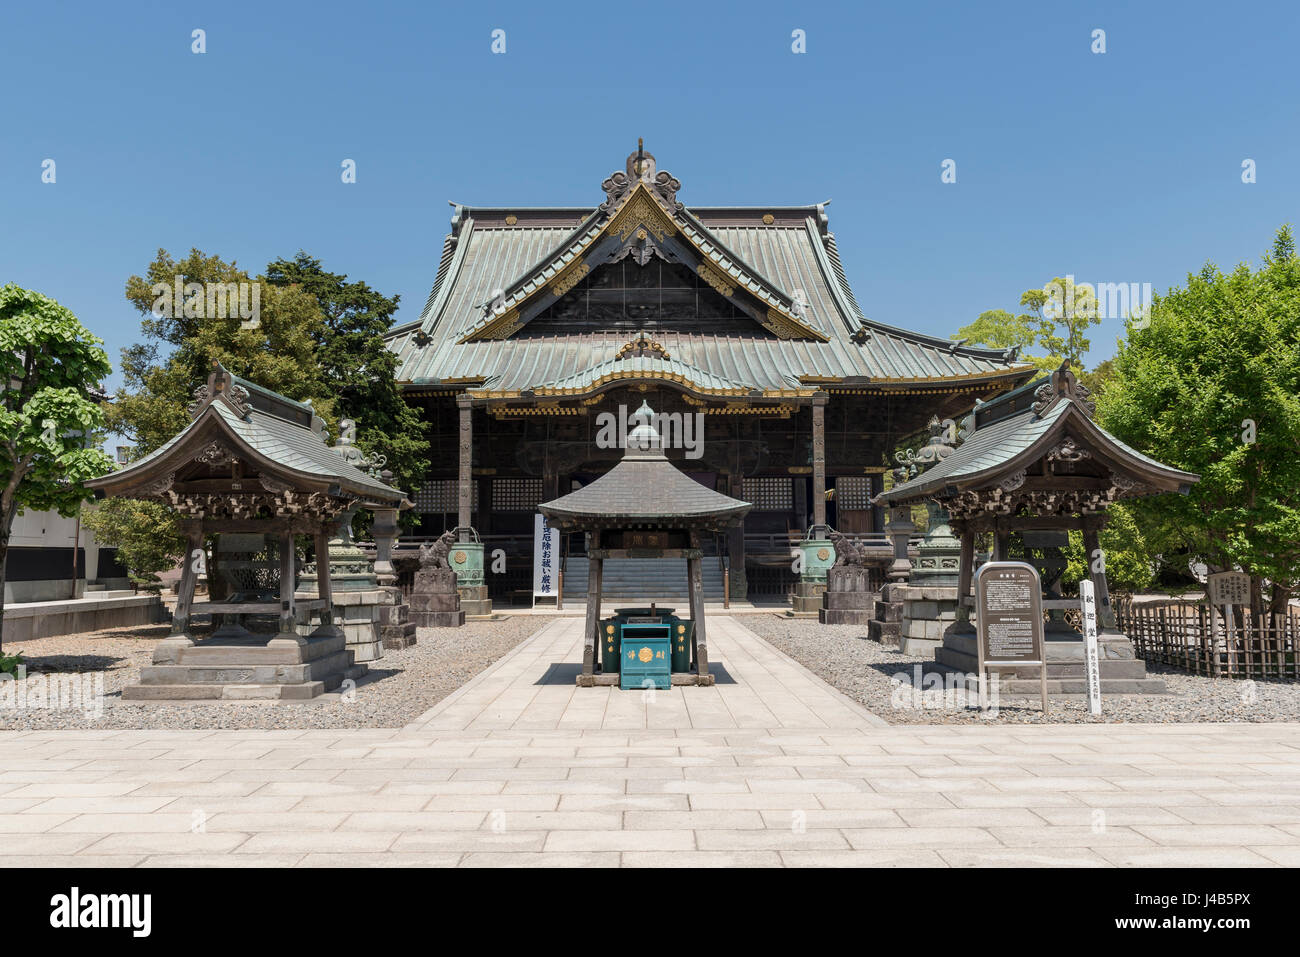 Shaka n'Hall à Naritasan Shinshoji temple qui appartient à la secte Shingon Chisan du bouddhisme. Complexe du temple de Narita près de Tokyo, Japon Banque D'Images